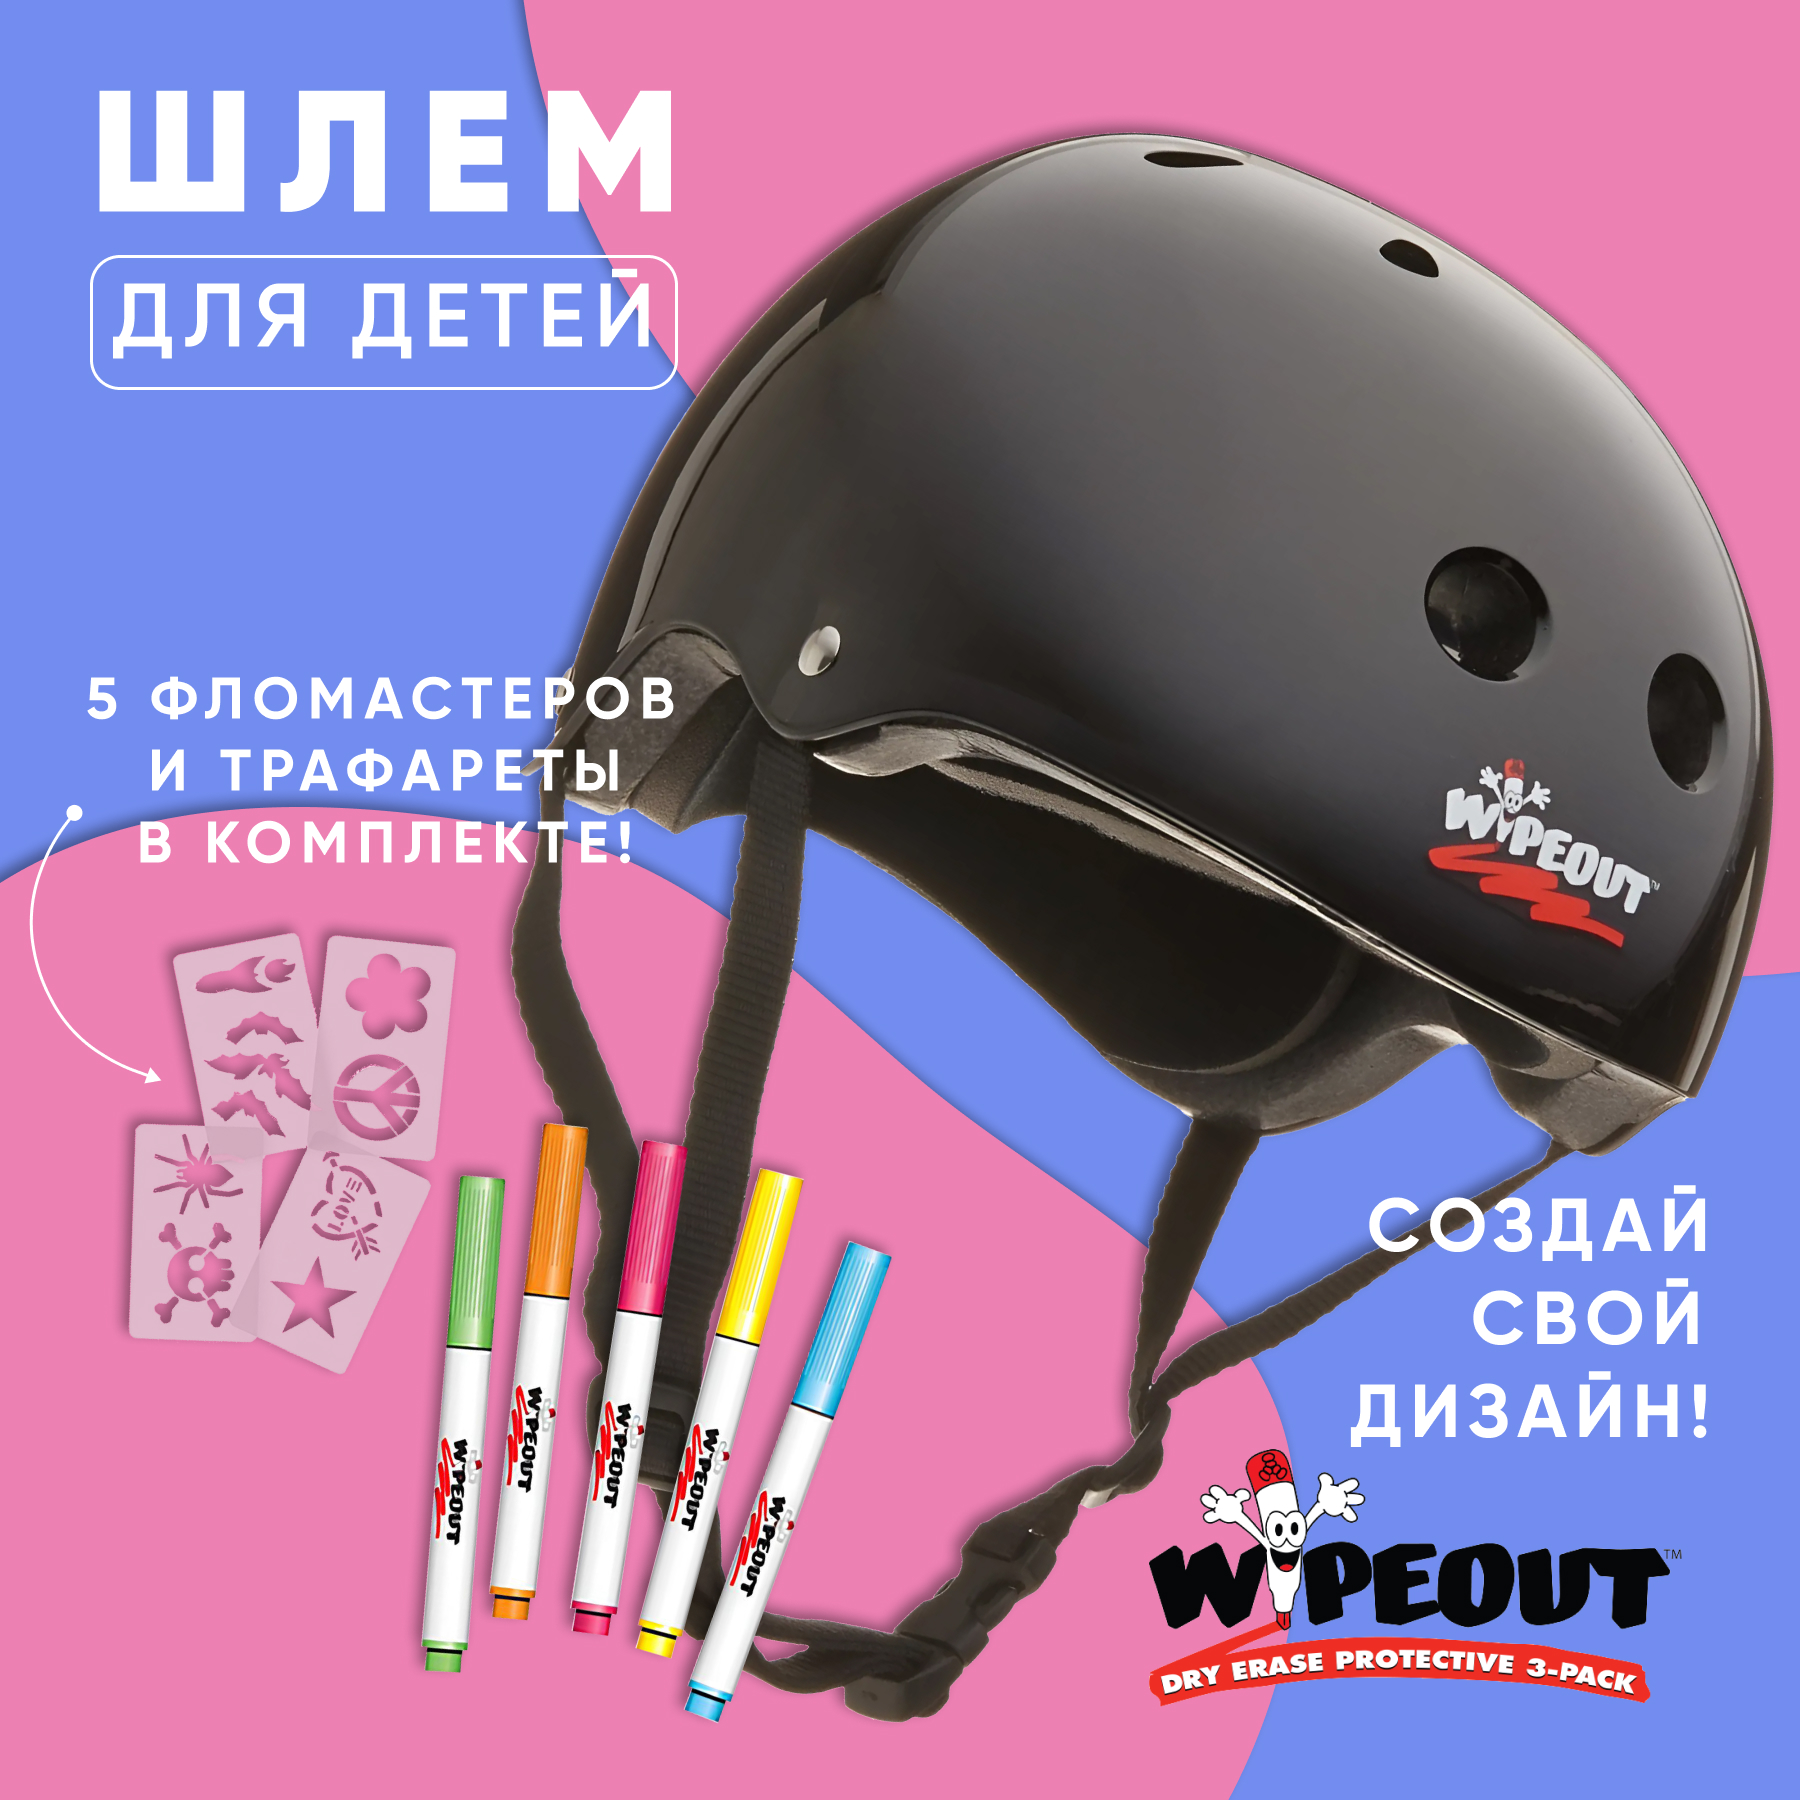 Шлем защитный спортивный WIPEOUT Black с фломастерами и трафаретами размер M 5+ обхват головы 49-52 см - фото 2